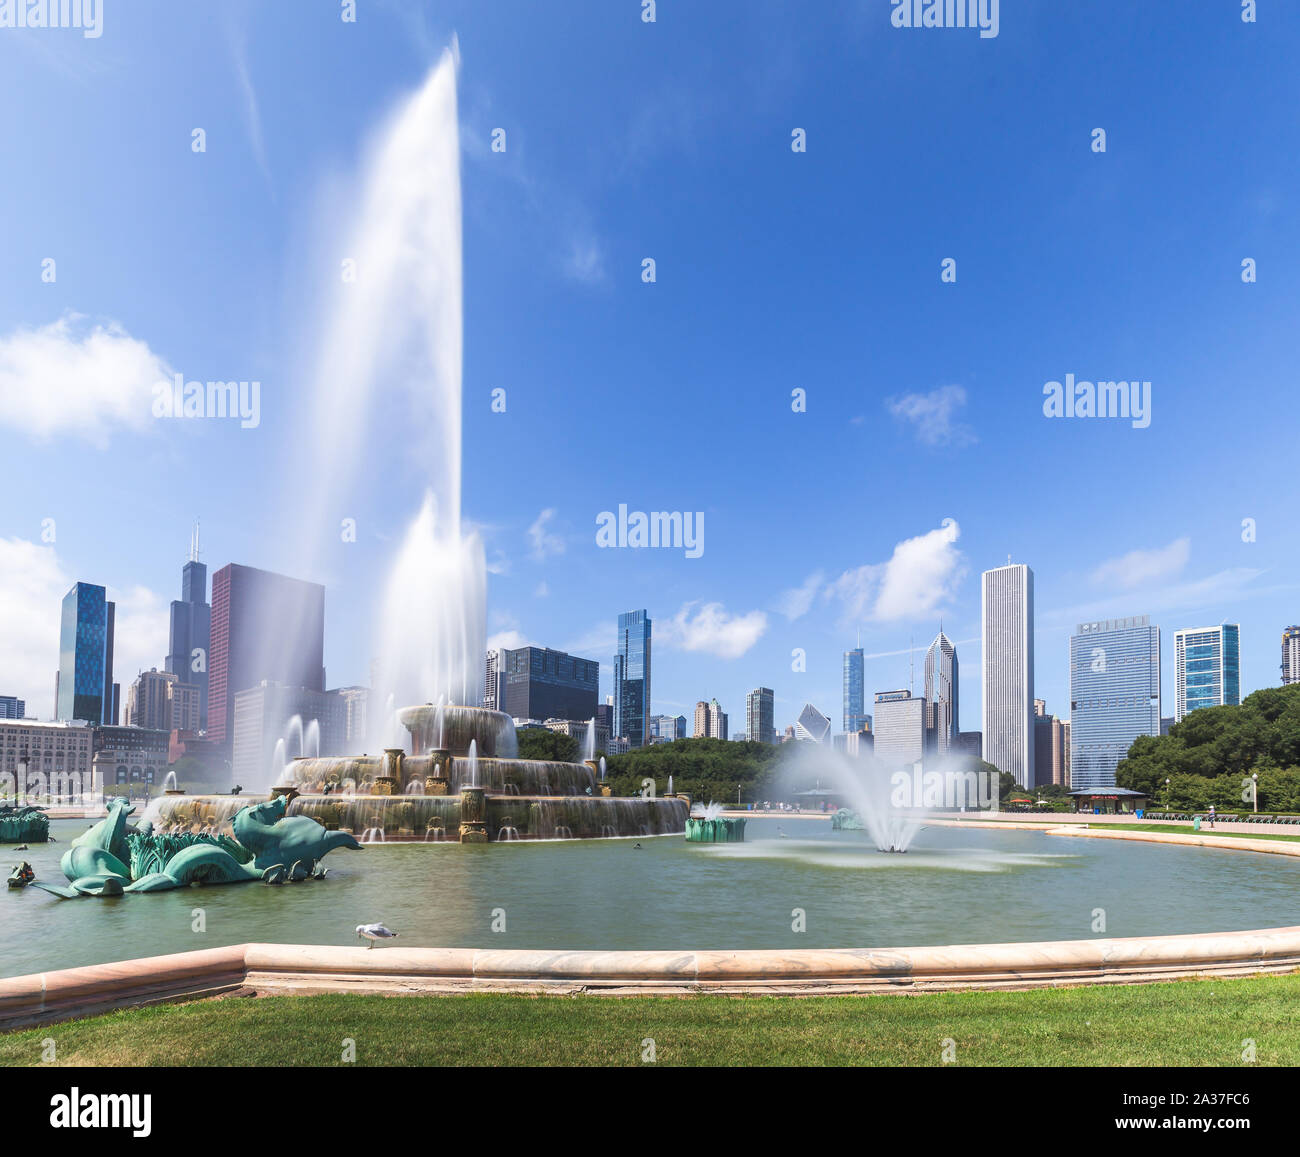 Le Buckingham Memorial Fountain, situé dans le Grant Park (Parc du millénaire) et l'horizon de Chicago. Illinois, États-Unis Banque D'Images